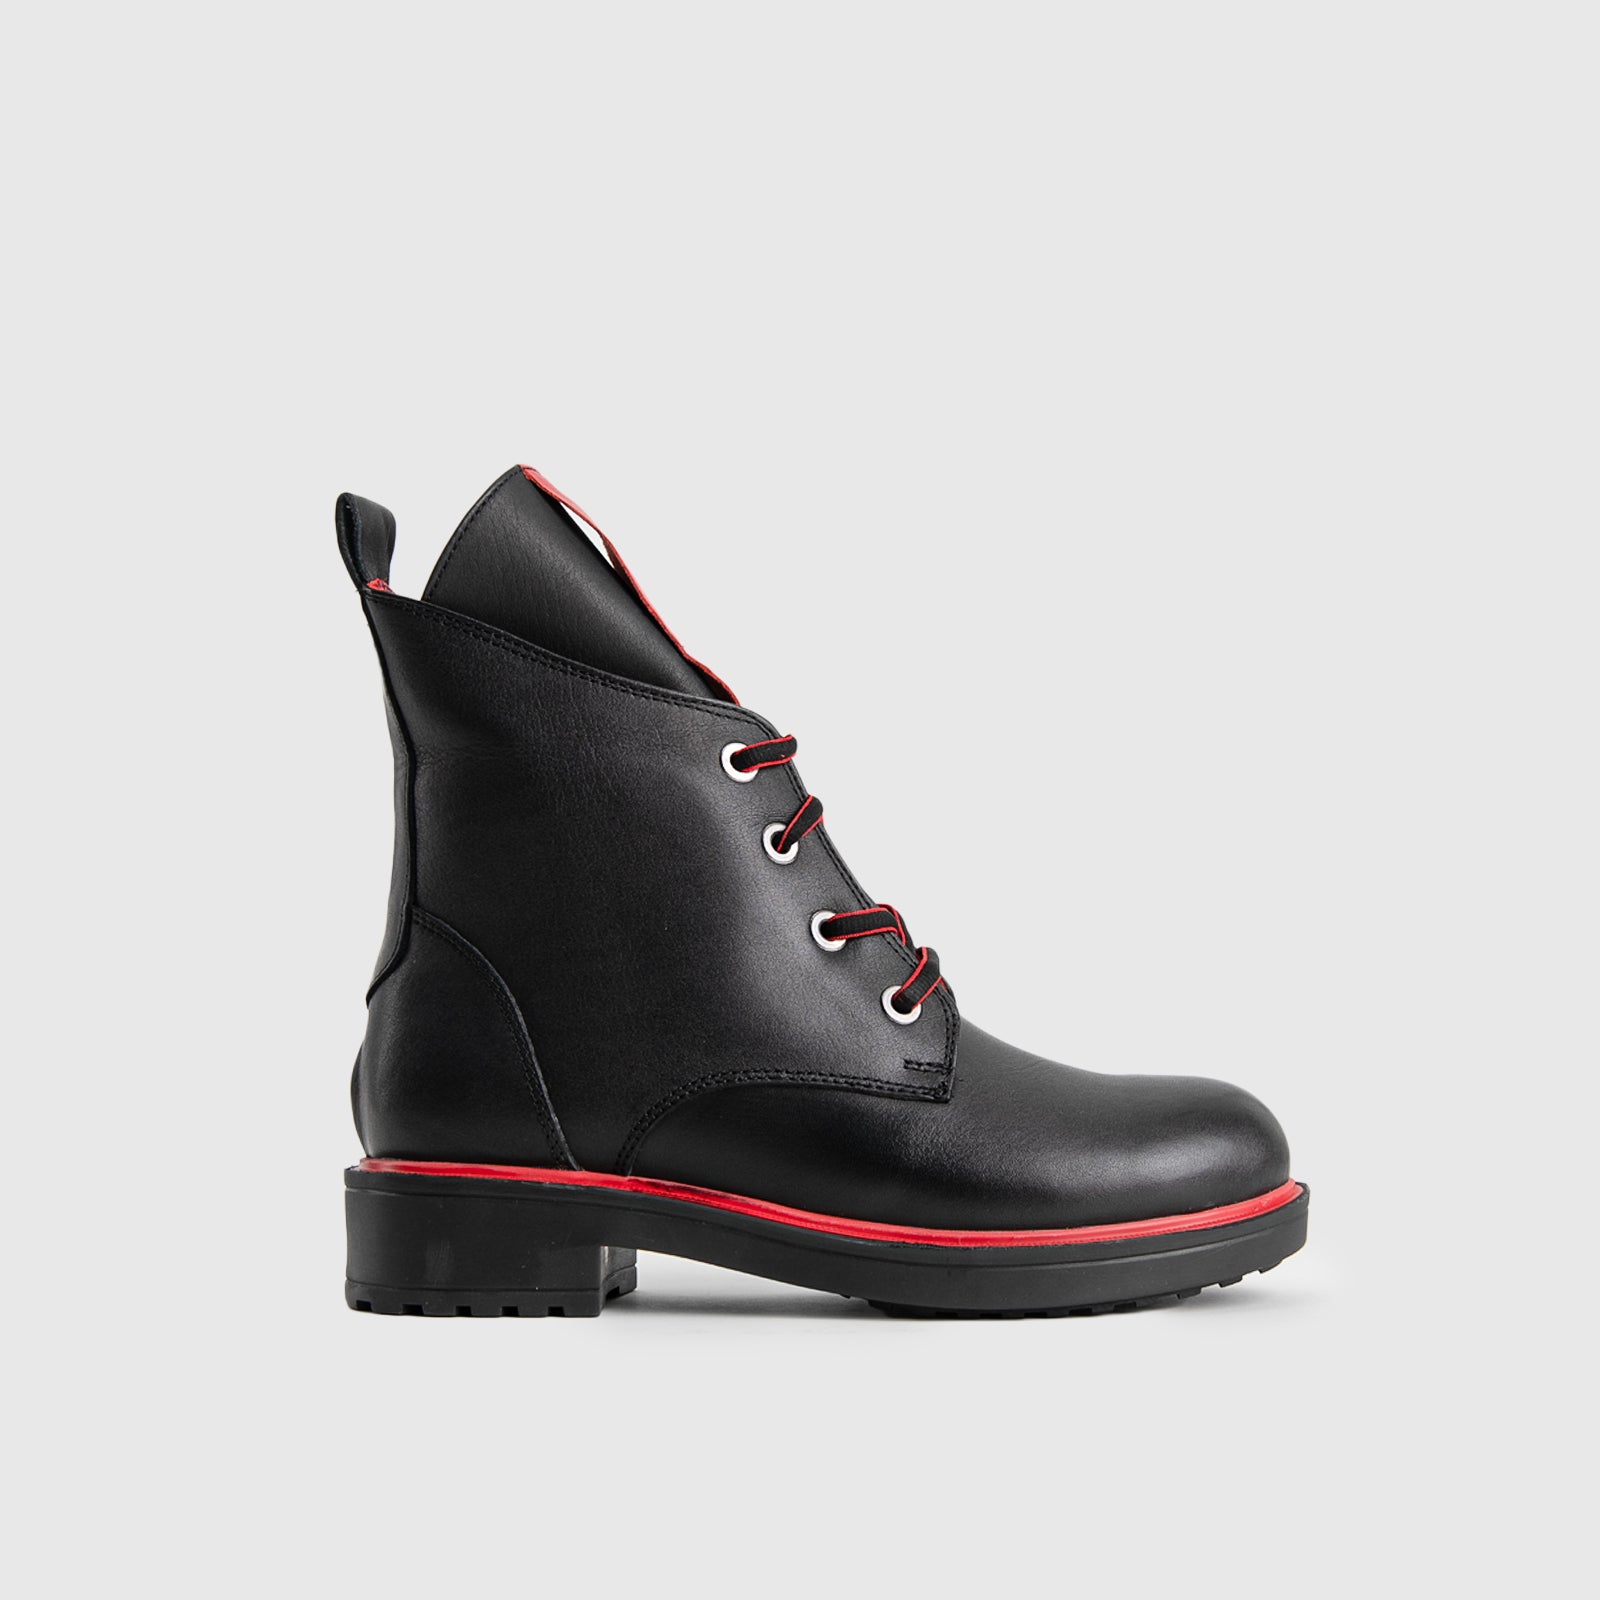 Dimato 754-2 Boots | familyshoecentre